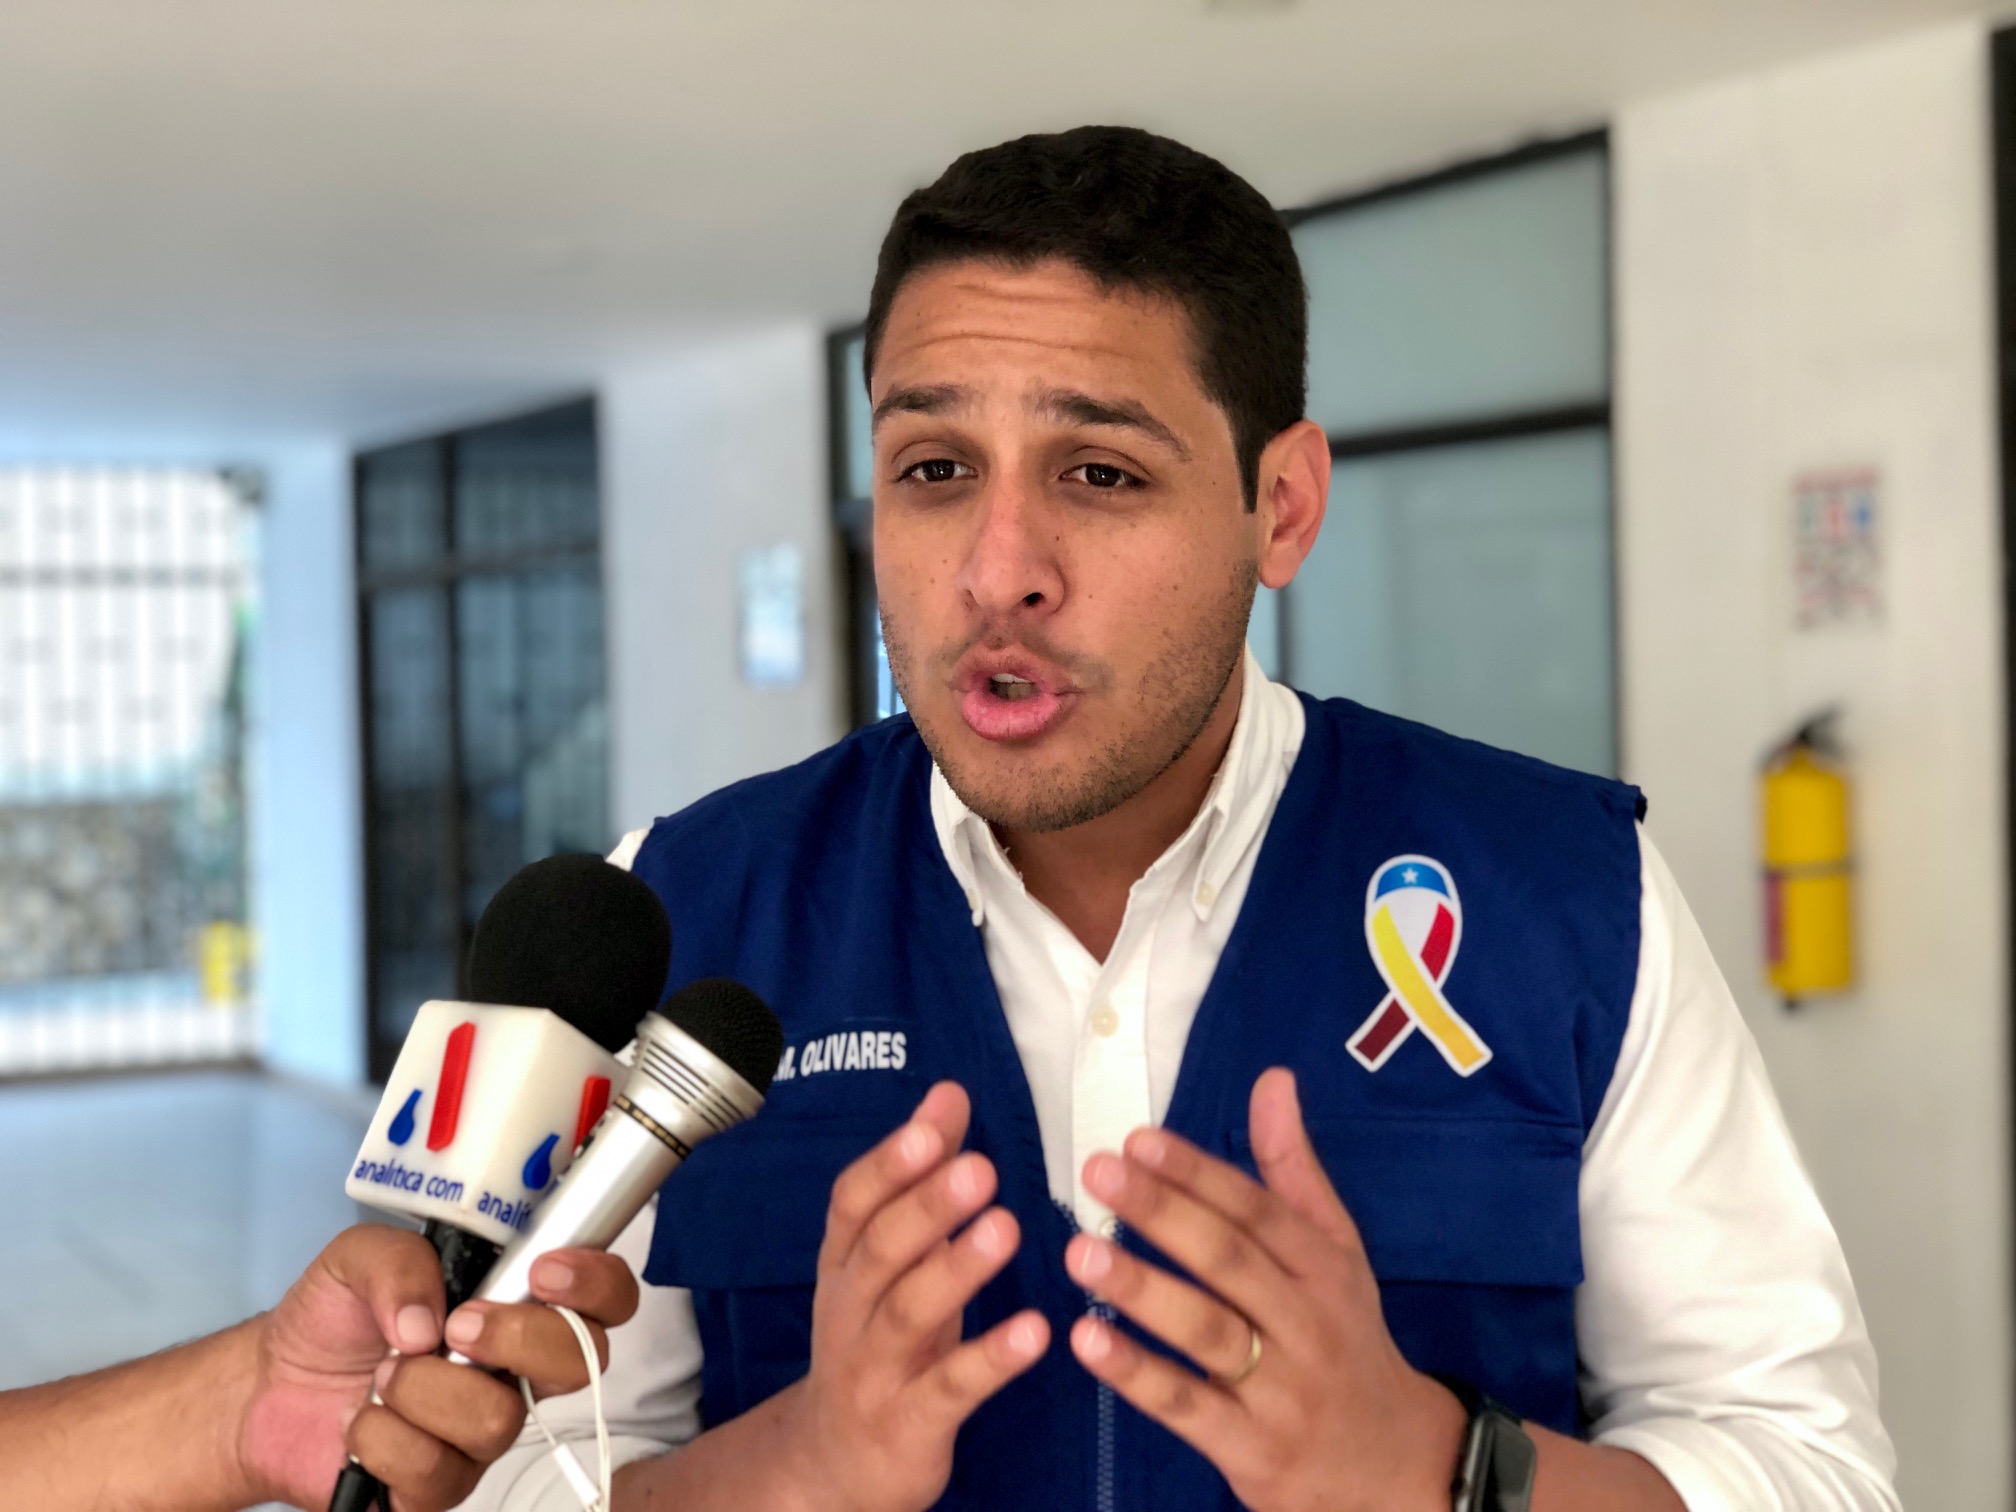 El mensaje de José Manuel Olivares al sector salud: ¡Estamos con ustedes! (VIDEO)